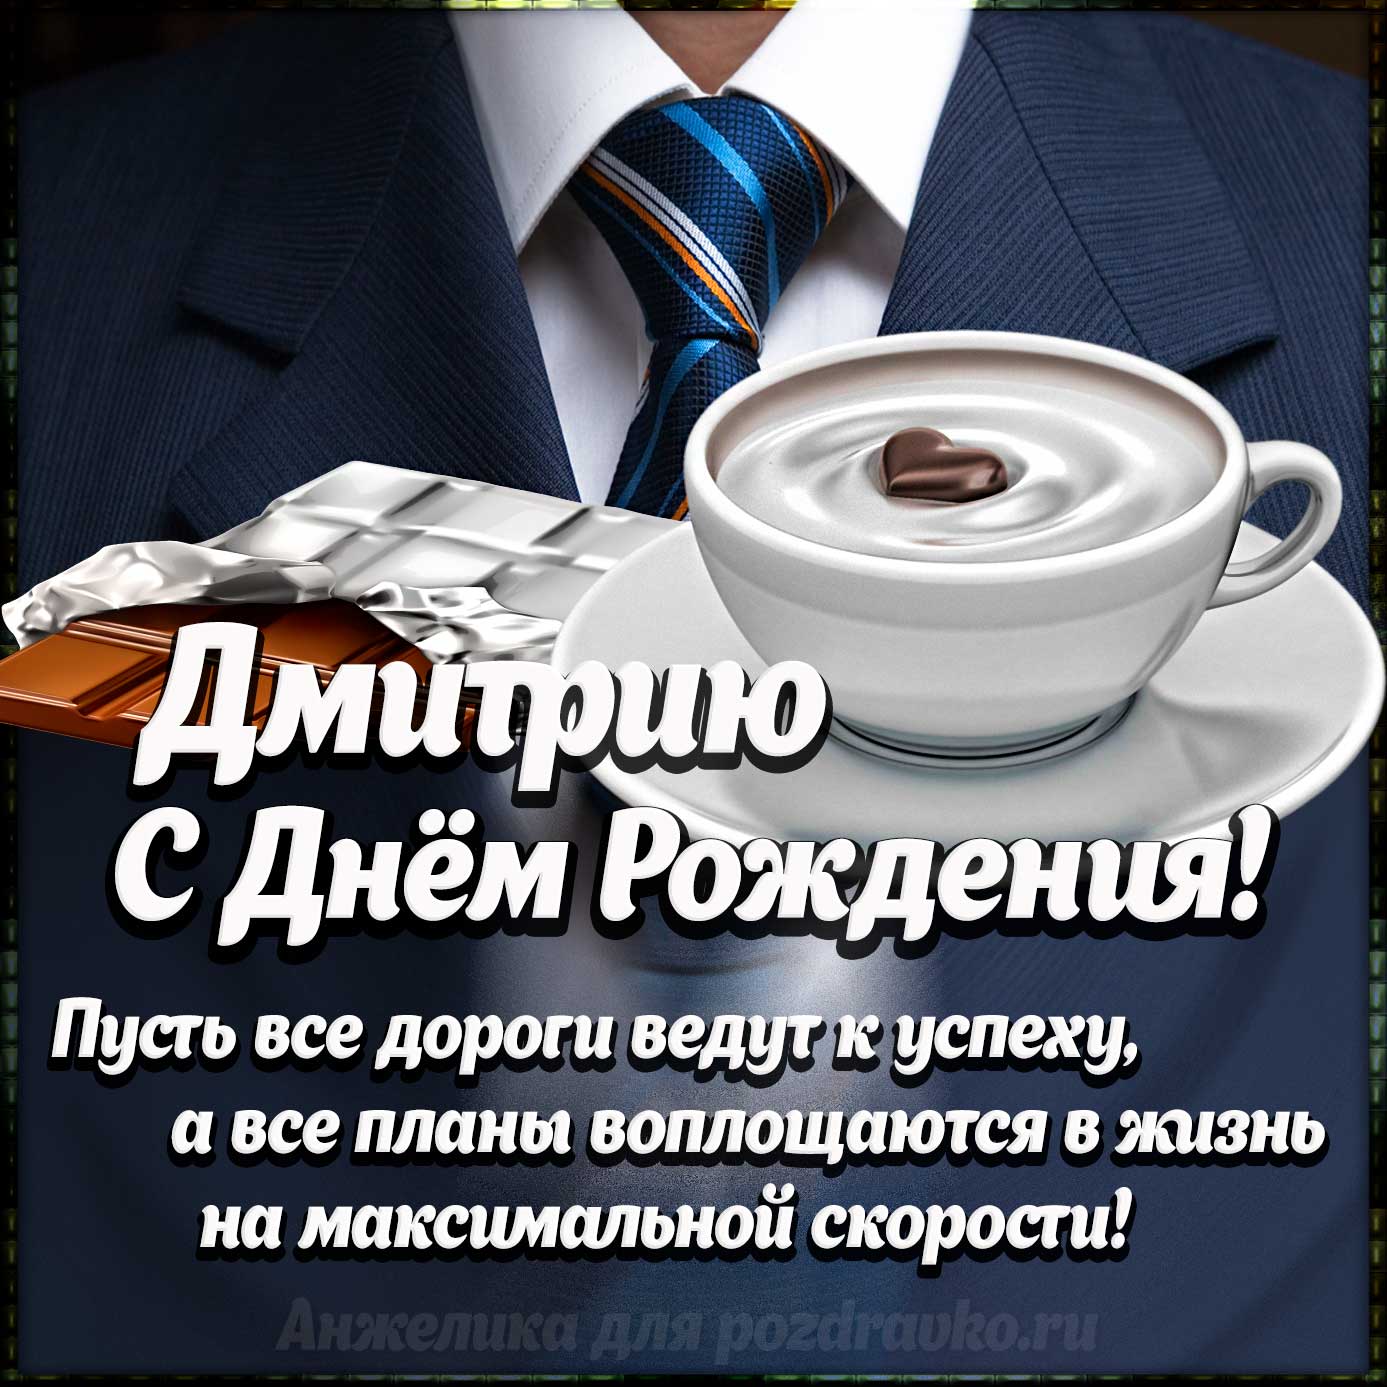 Открытка - Дмитрию с Днем Рождения с галстуком, кофе и пожеланием. Скачать бесплатно или отправить картинку.